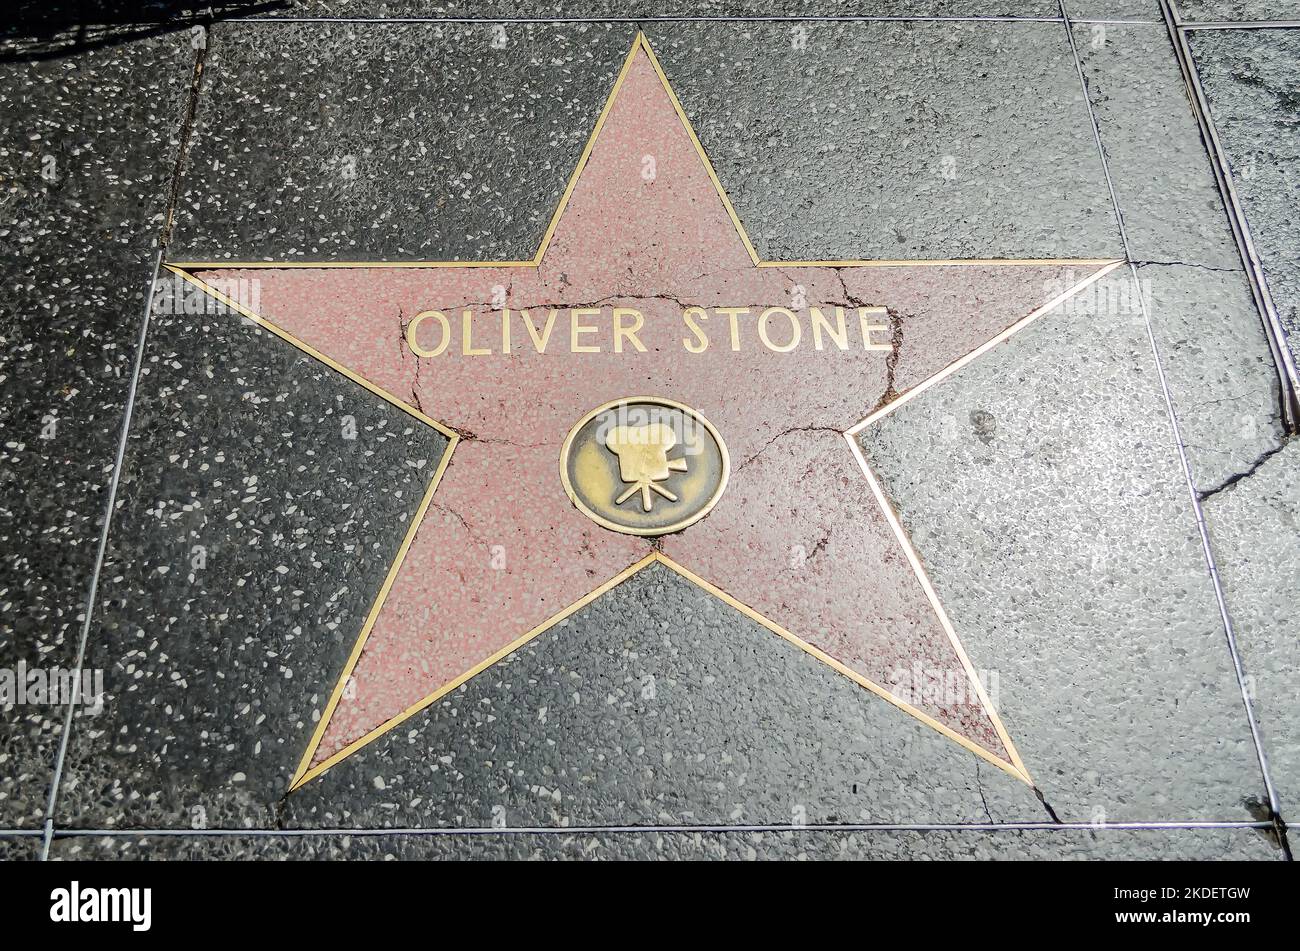 HOLLYWOOD - 26. AUGUST 2012: Oliver Stones Star auf dem Hollywood Walk of Fame, gesehen am 26. August 2012 in Hollywood in Kalifornien. Dieser Stern ist lokalisiert Stockfoto